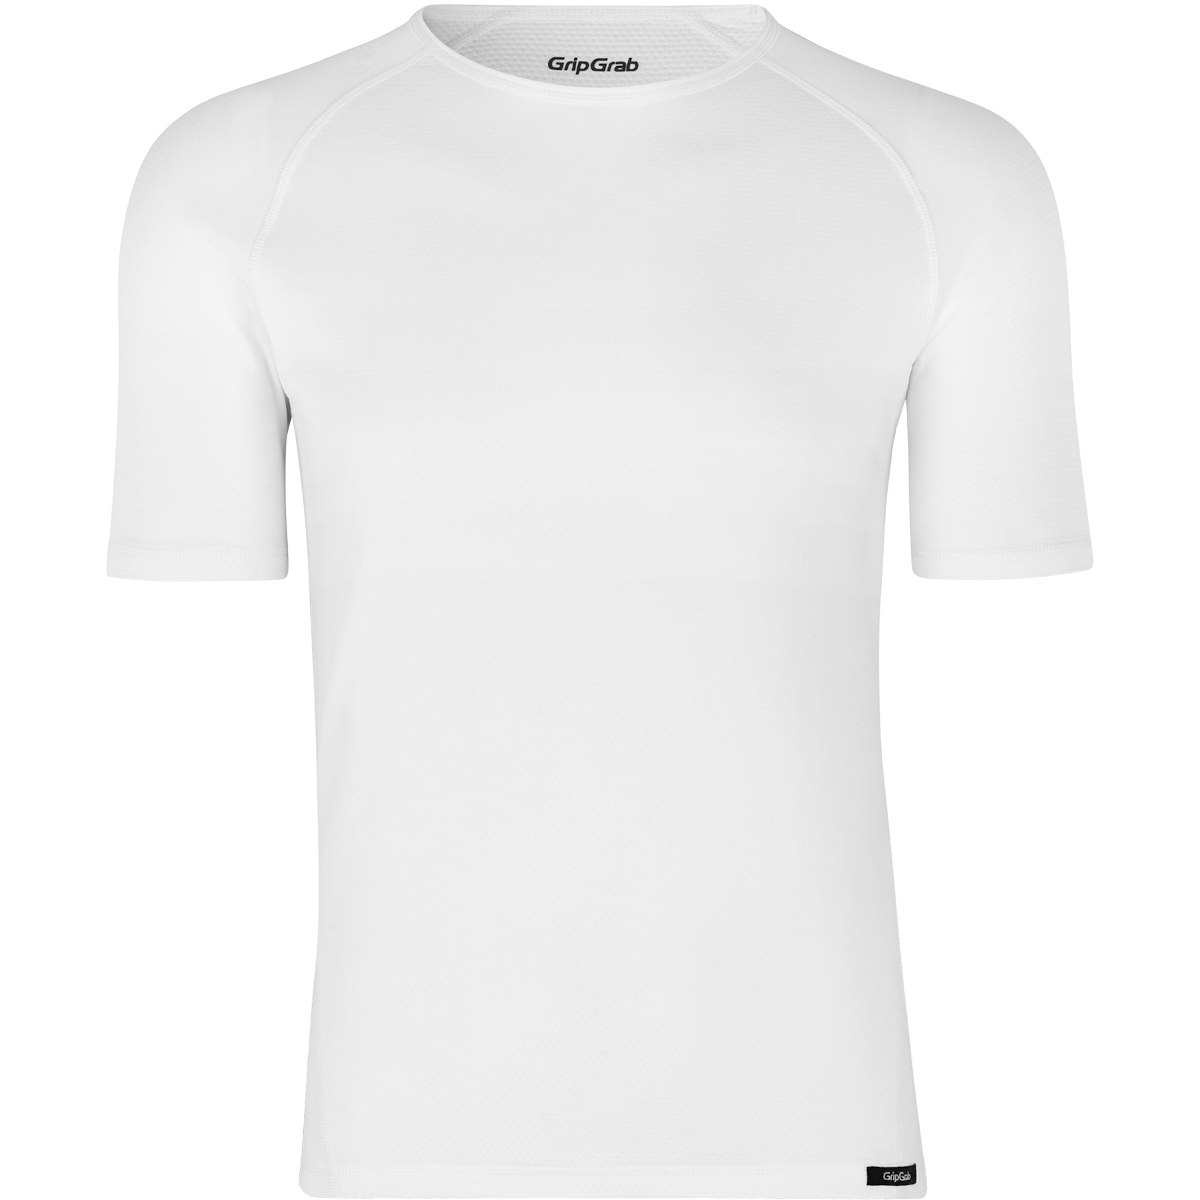 Produktbild von GripGrab Ride Thermal Kurzärmeliges Unterhemd - White